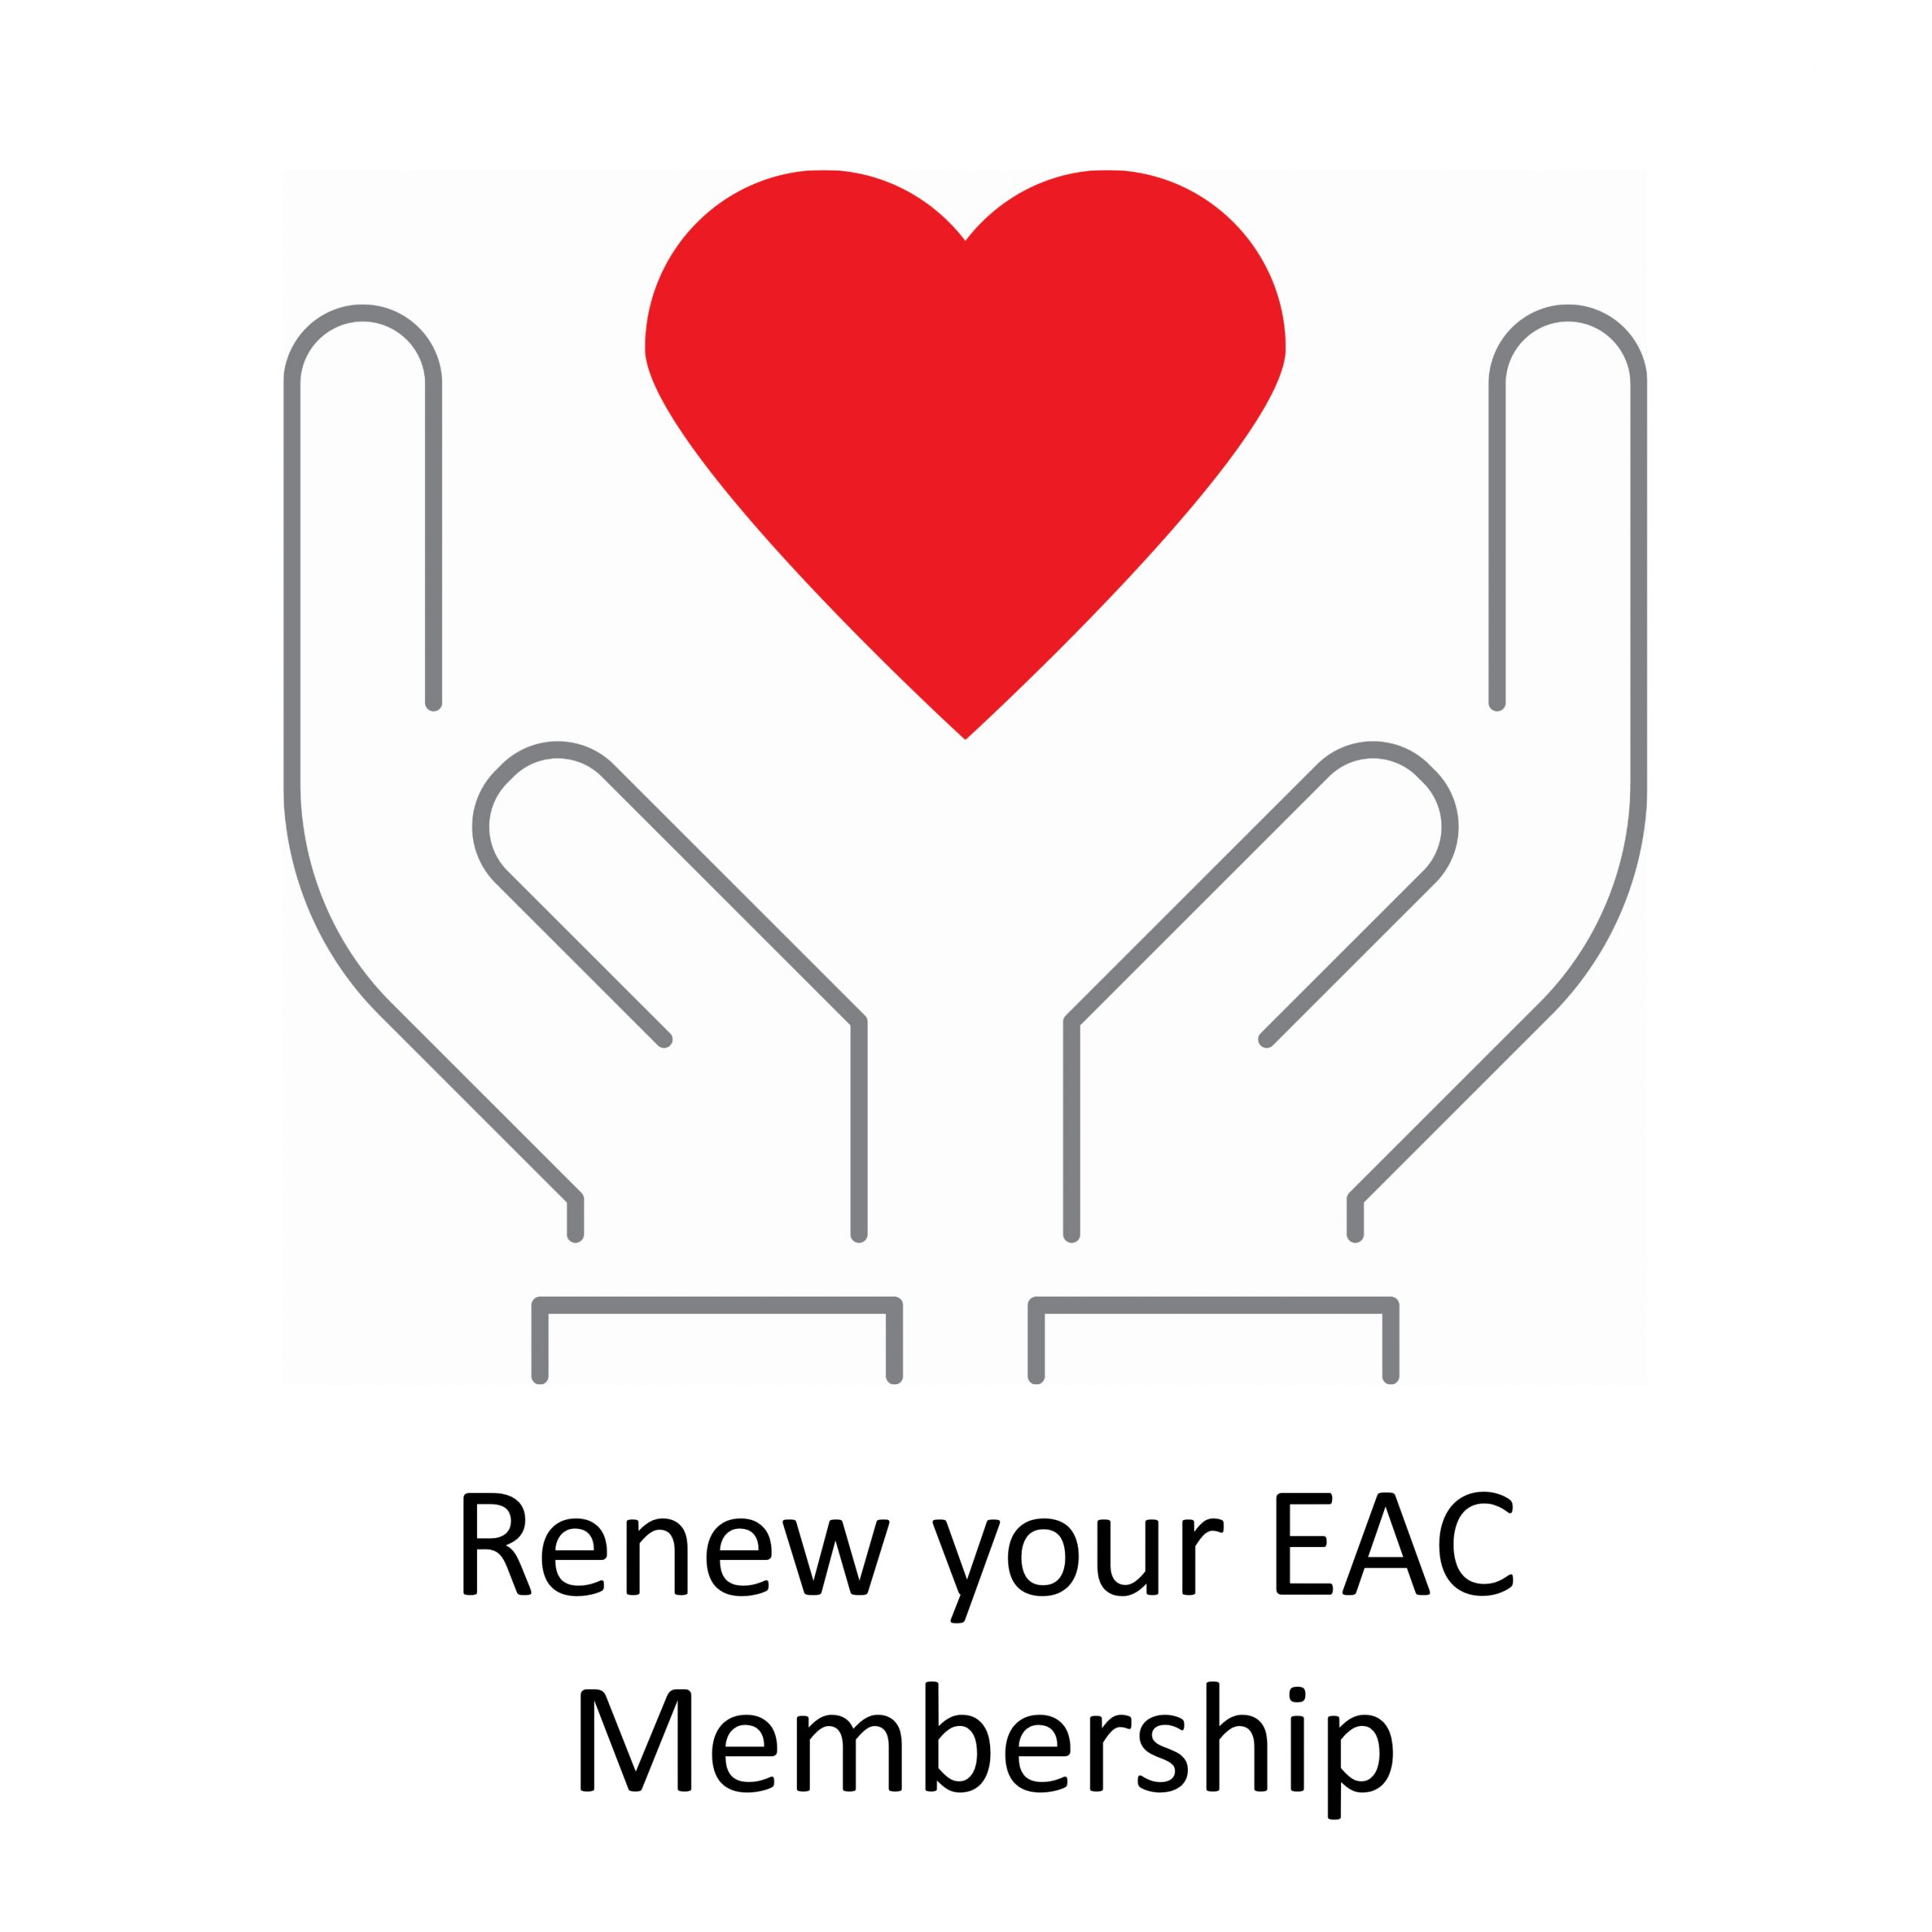 Renew Your Membership